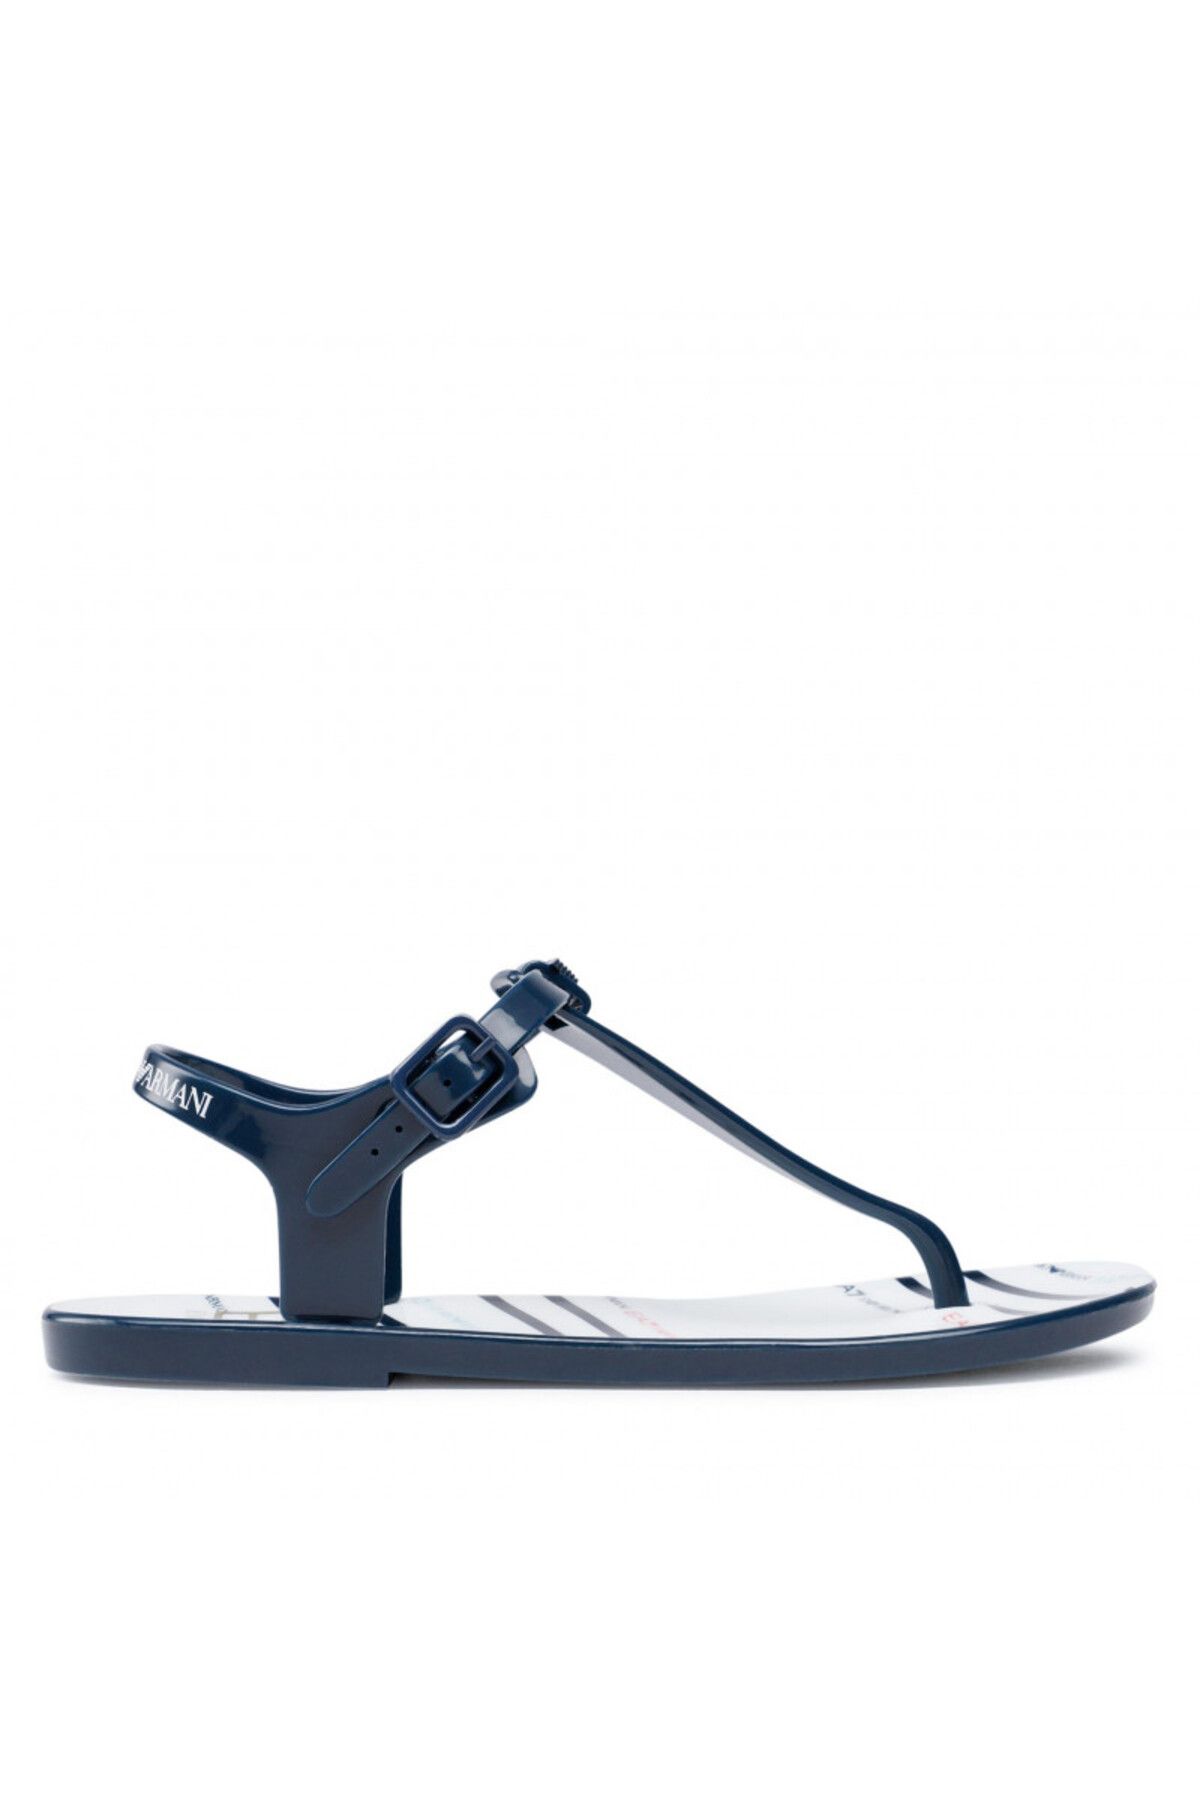 Emporio Armani Kadın Sandalet Xfq005-xk206-q722